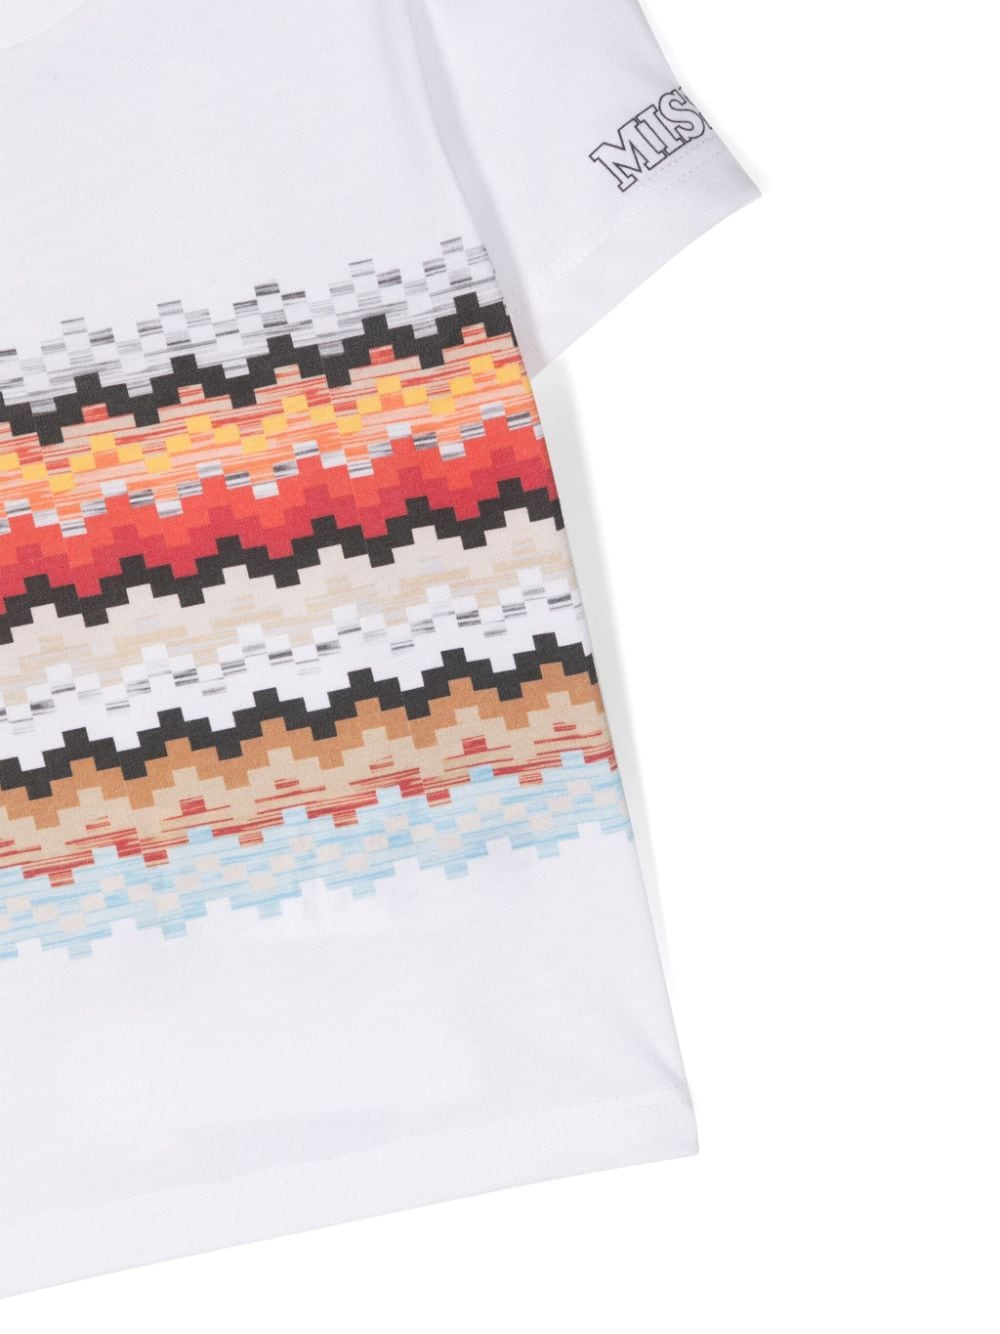 Missoni Kids T-shirt met zigzag-print Wit